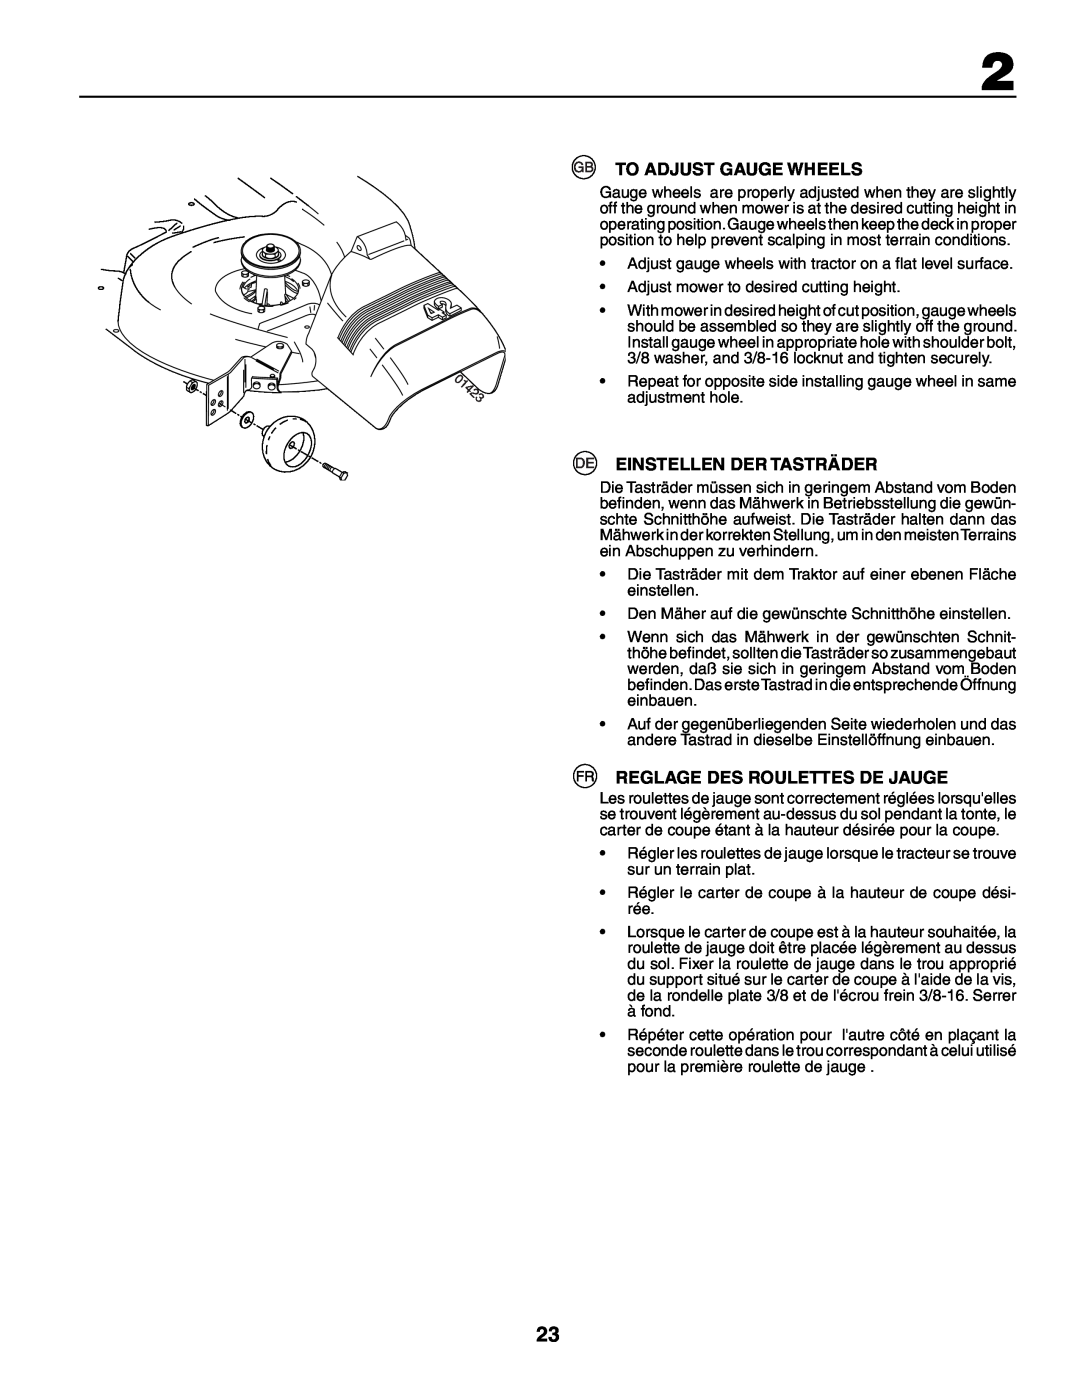 Husqvarna YTH210XP instruction manual To Adjust Gauge Wheels, Einstellen Der Tasträder, Reglage Des Roulettes De Jauge 